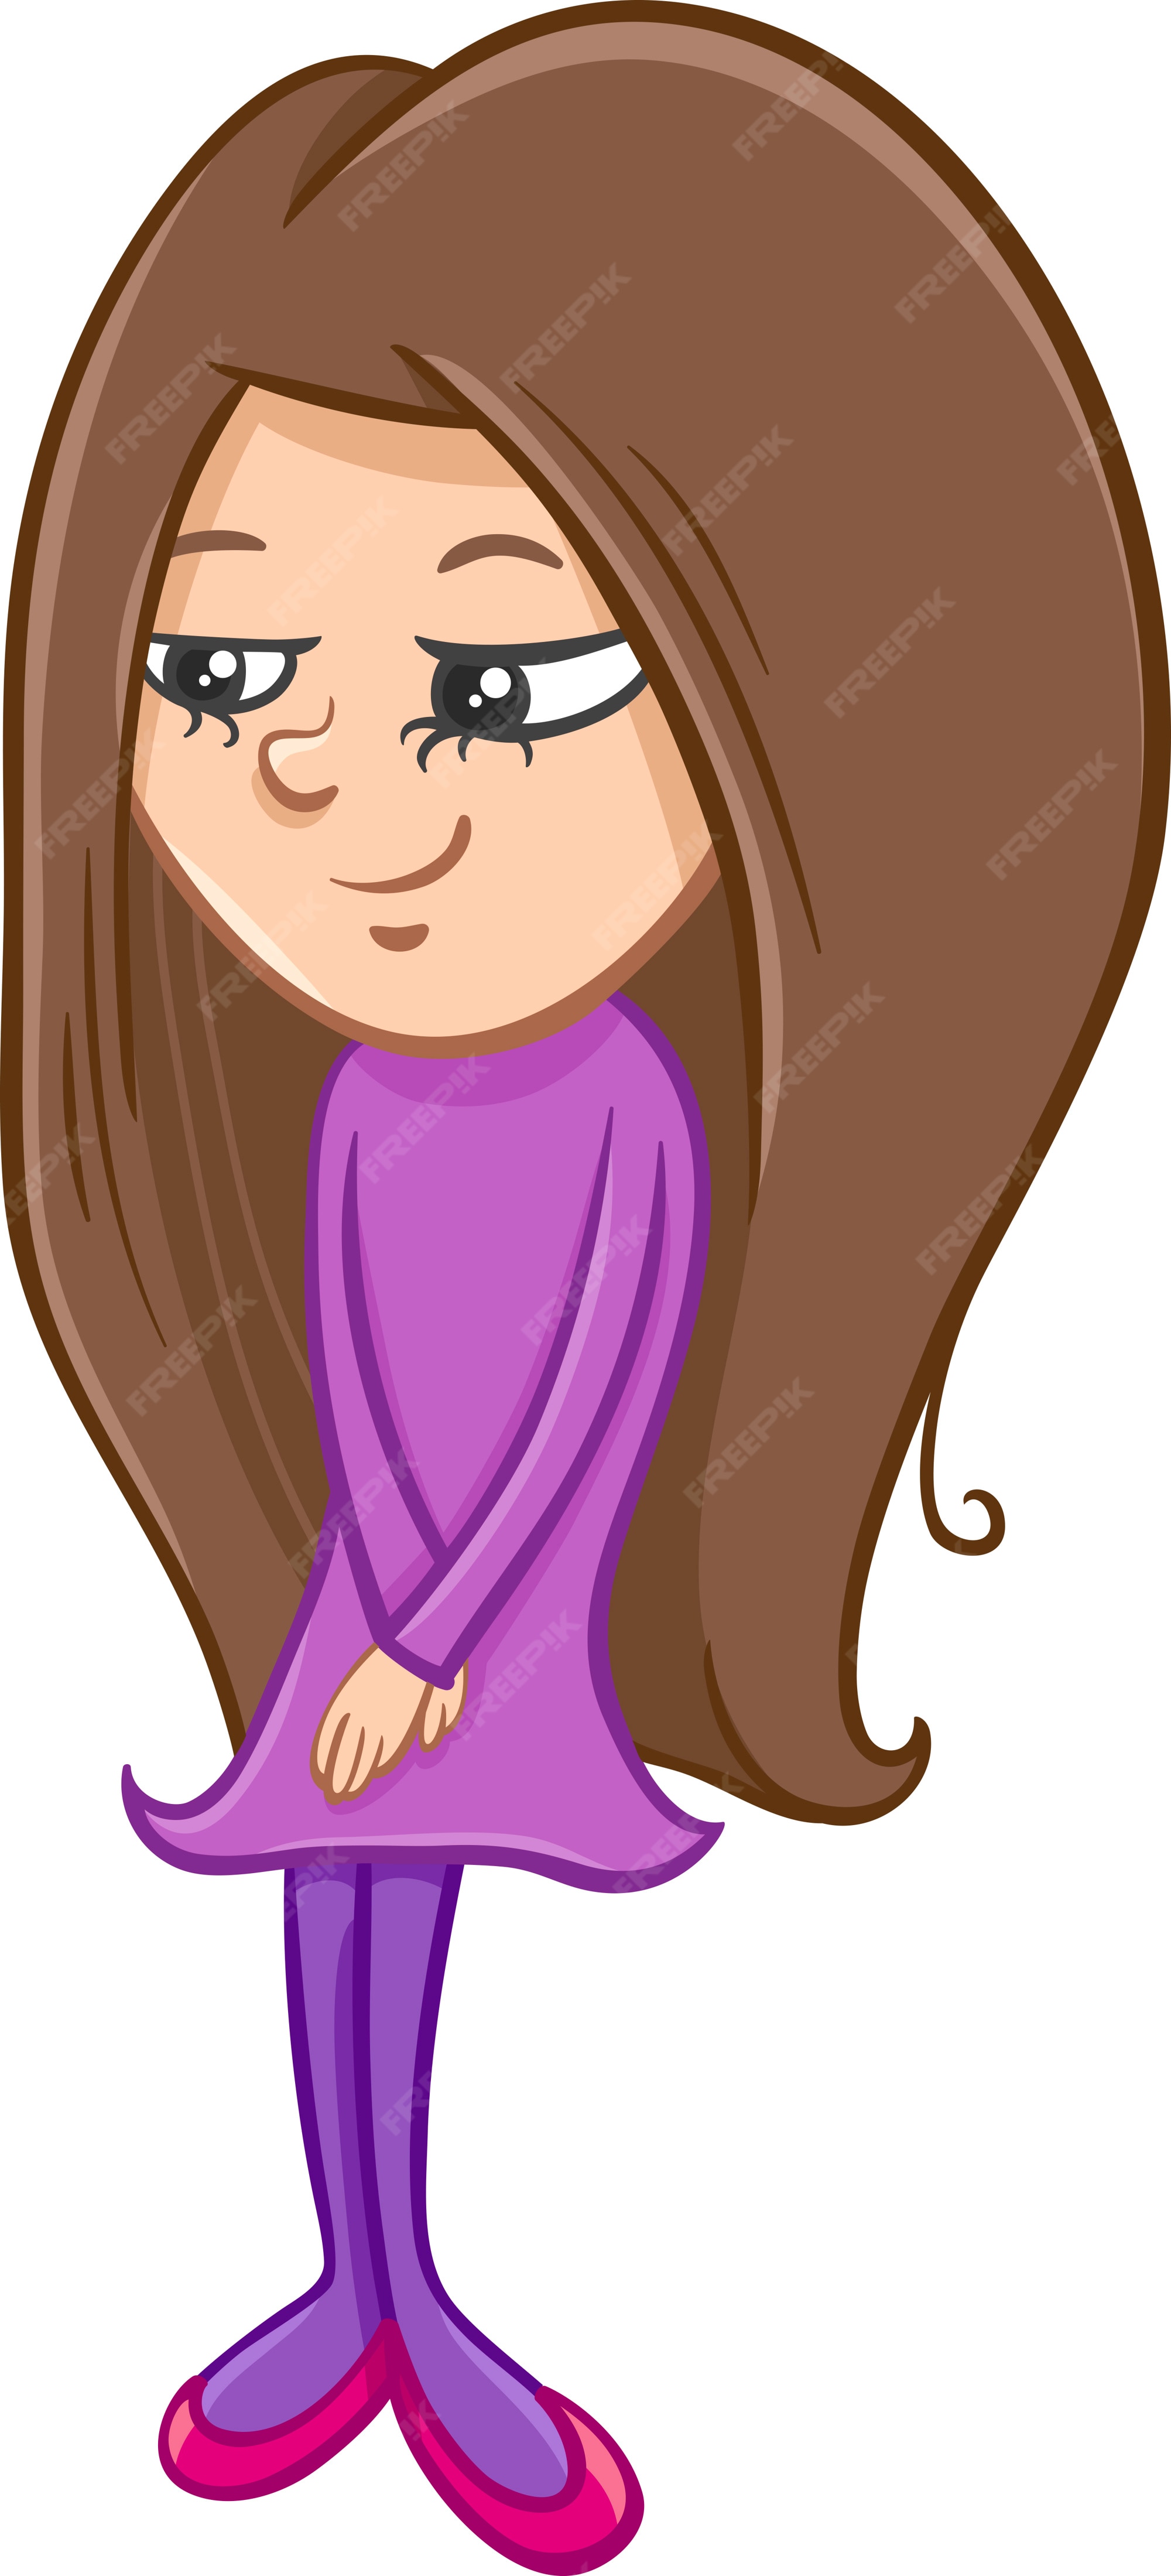 Cartoon Girl Long Hair Images - Free Download on Freepik